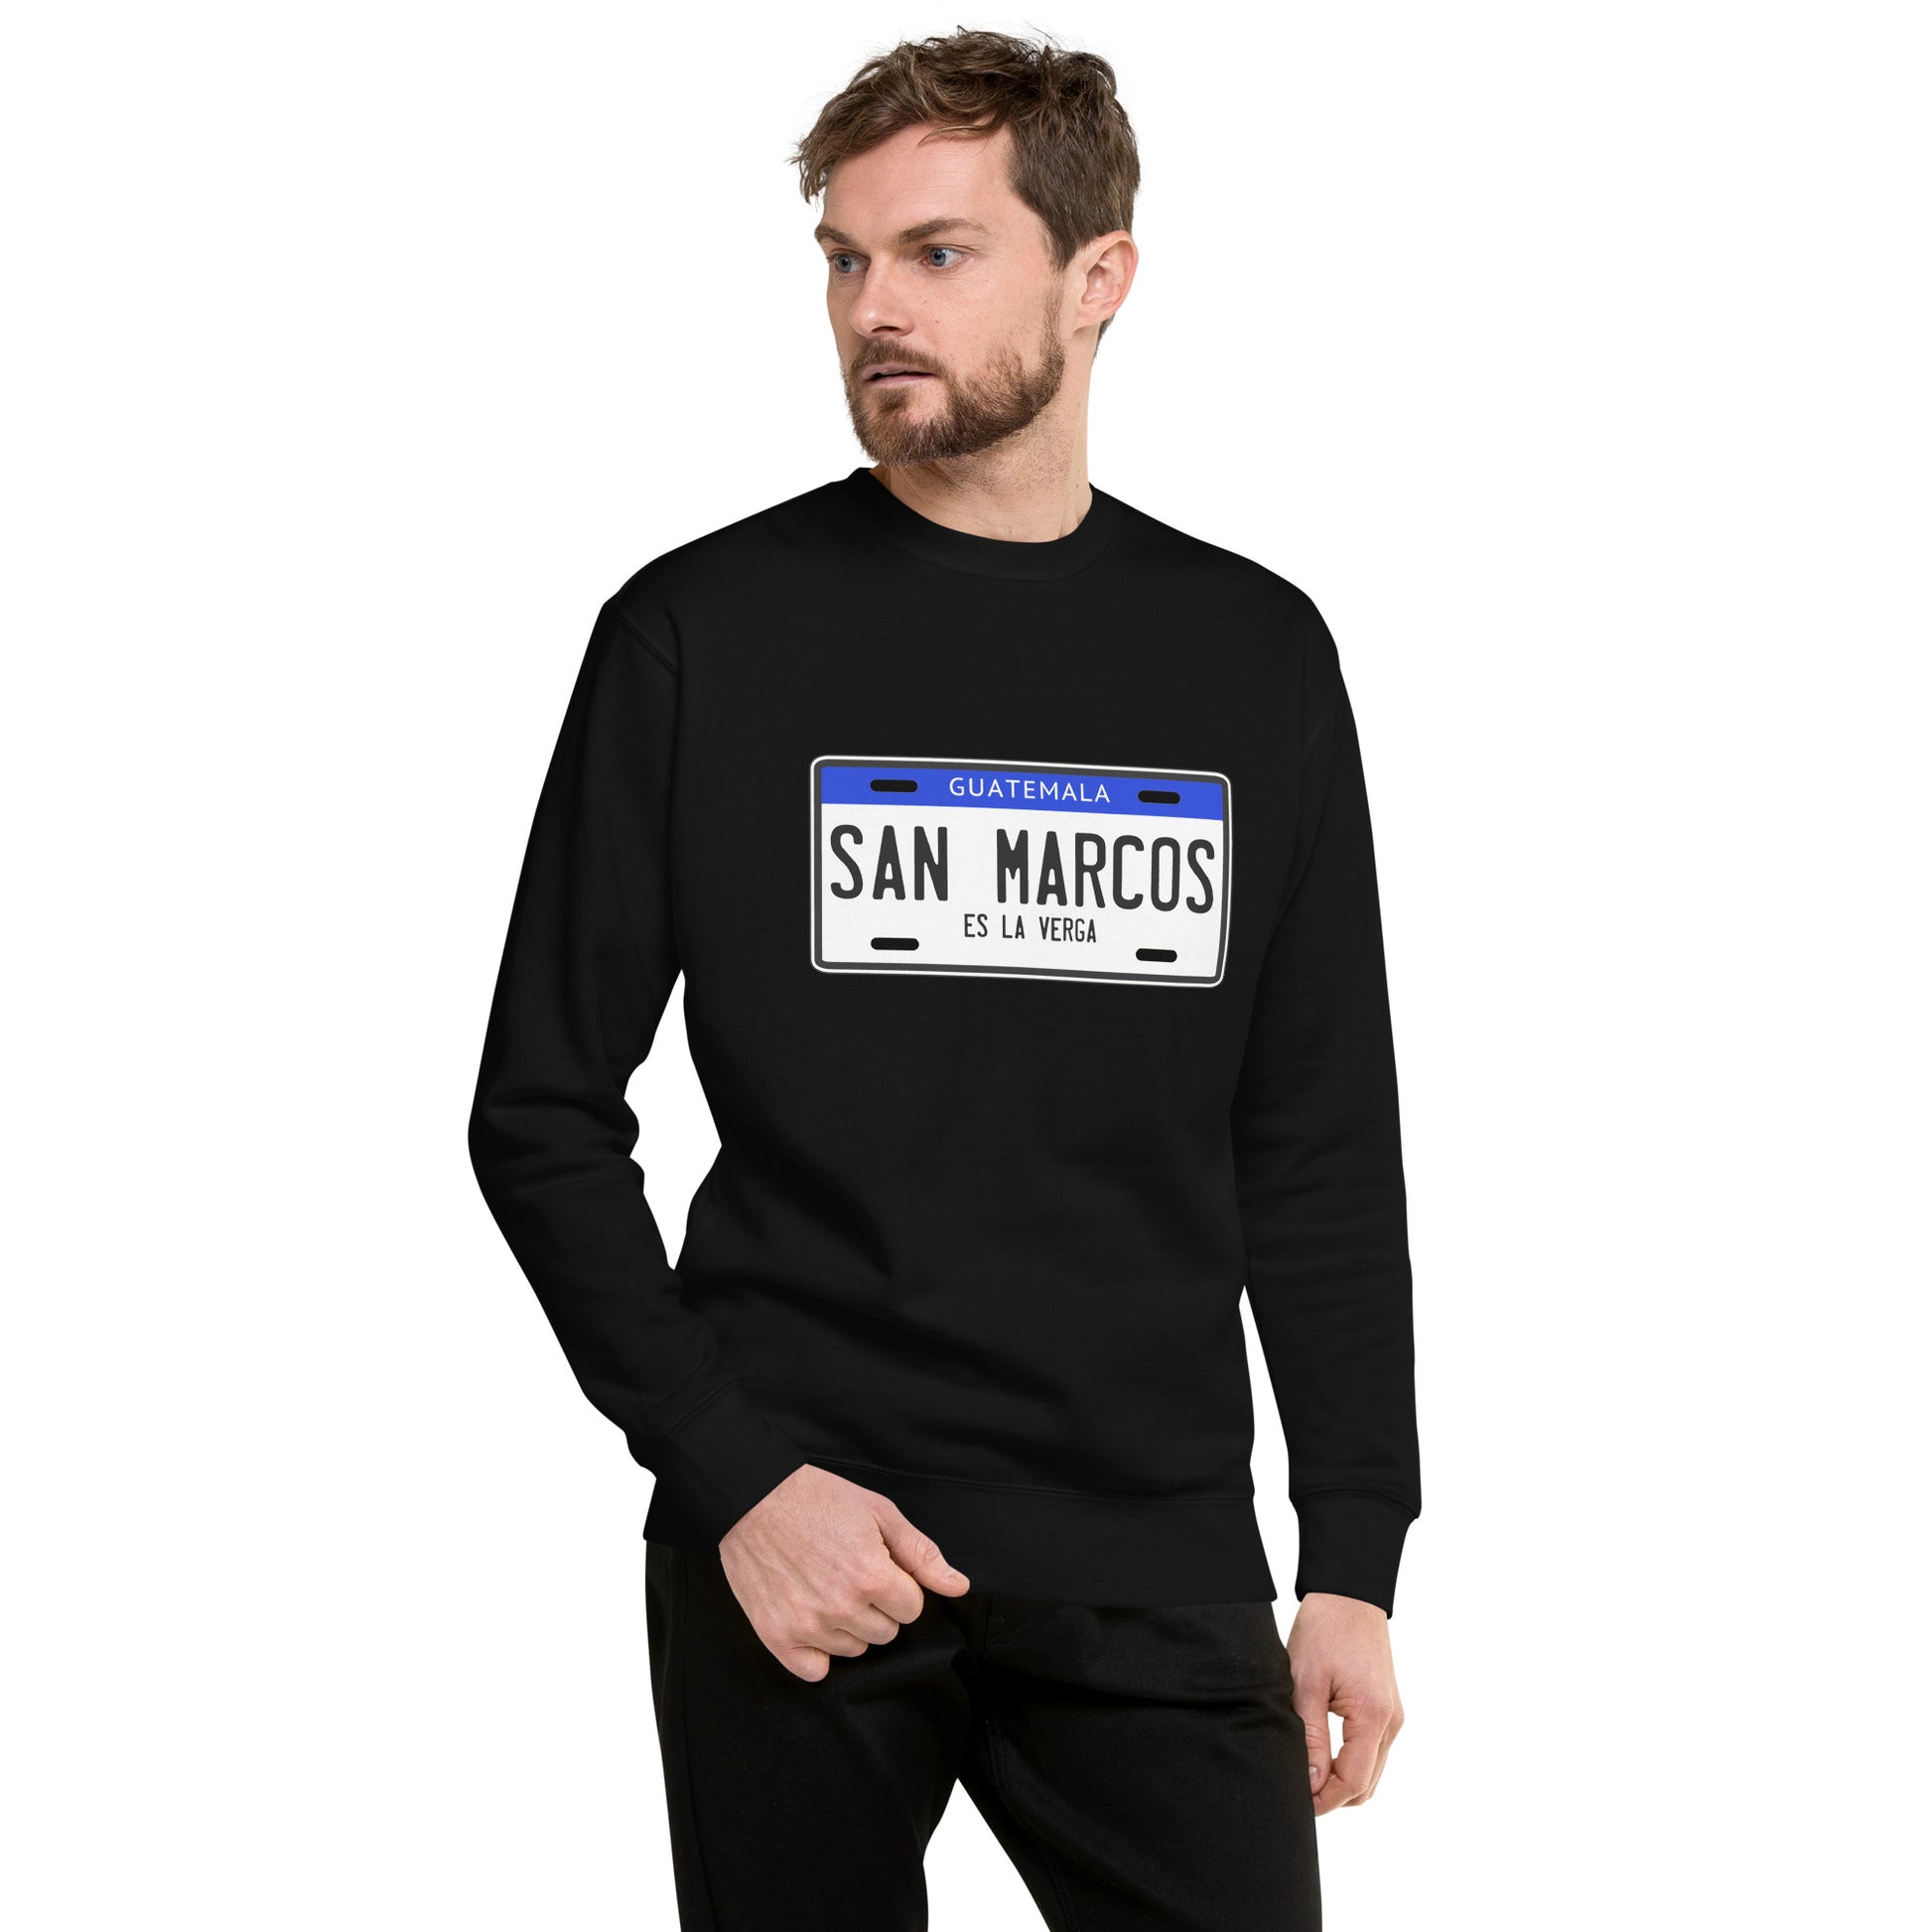 Suéter de San Marcos es la mera V... ,Descubre calidad excepcional y estampados duraderos. Encuentra estilo y orgullo en cada prenda. Compra ahora!